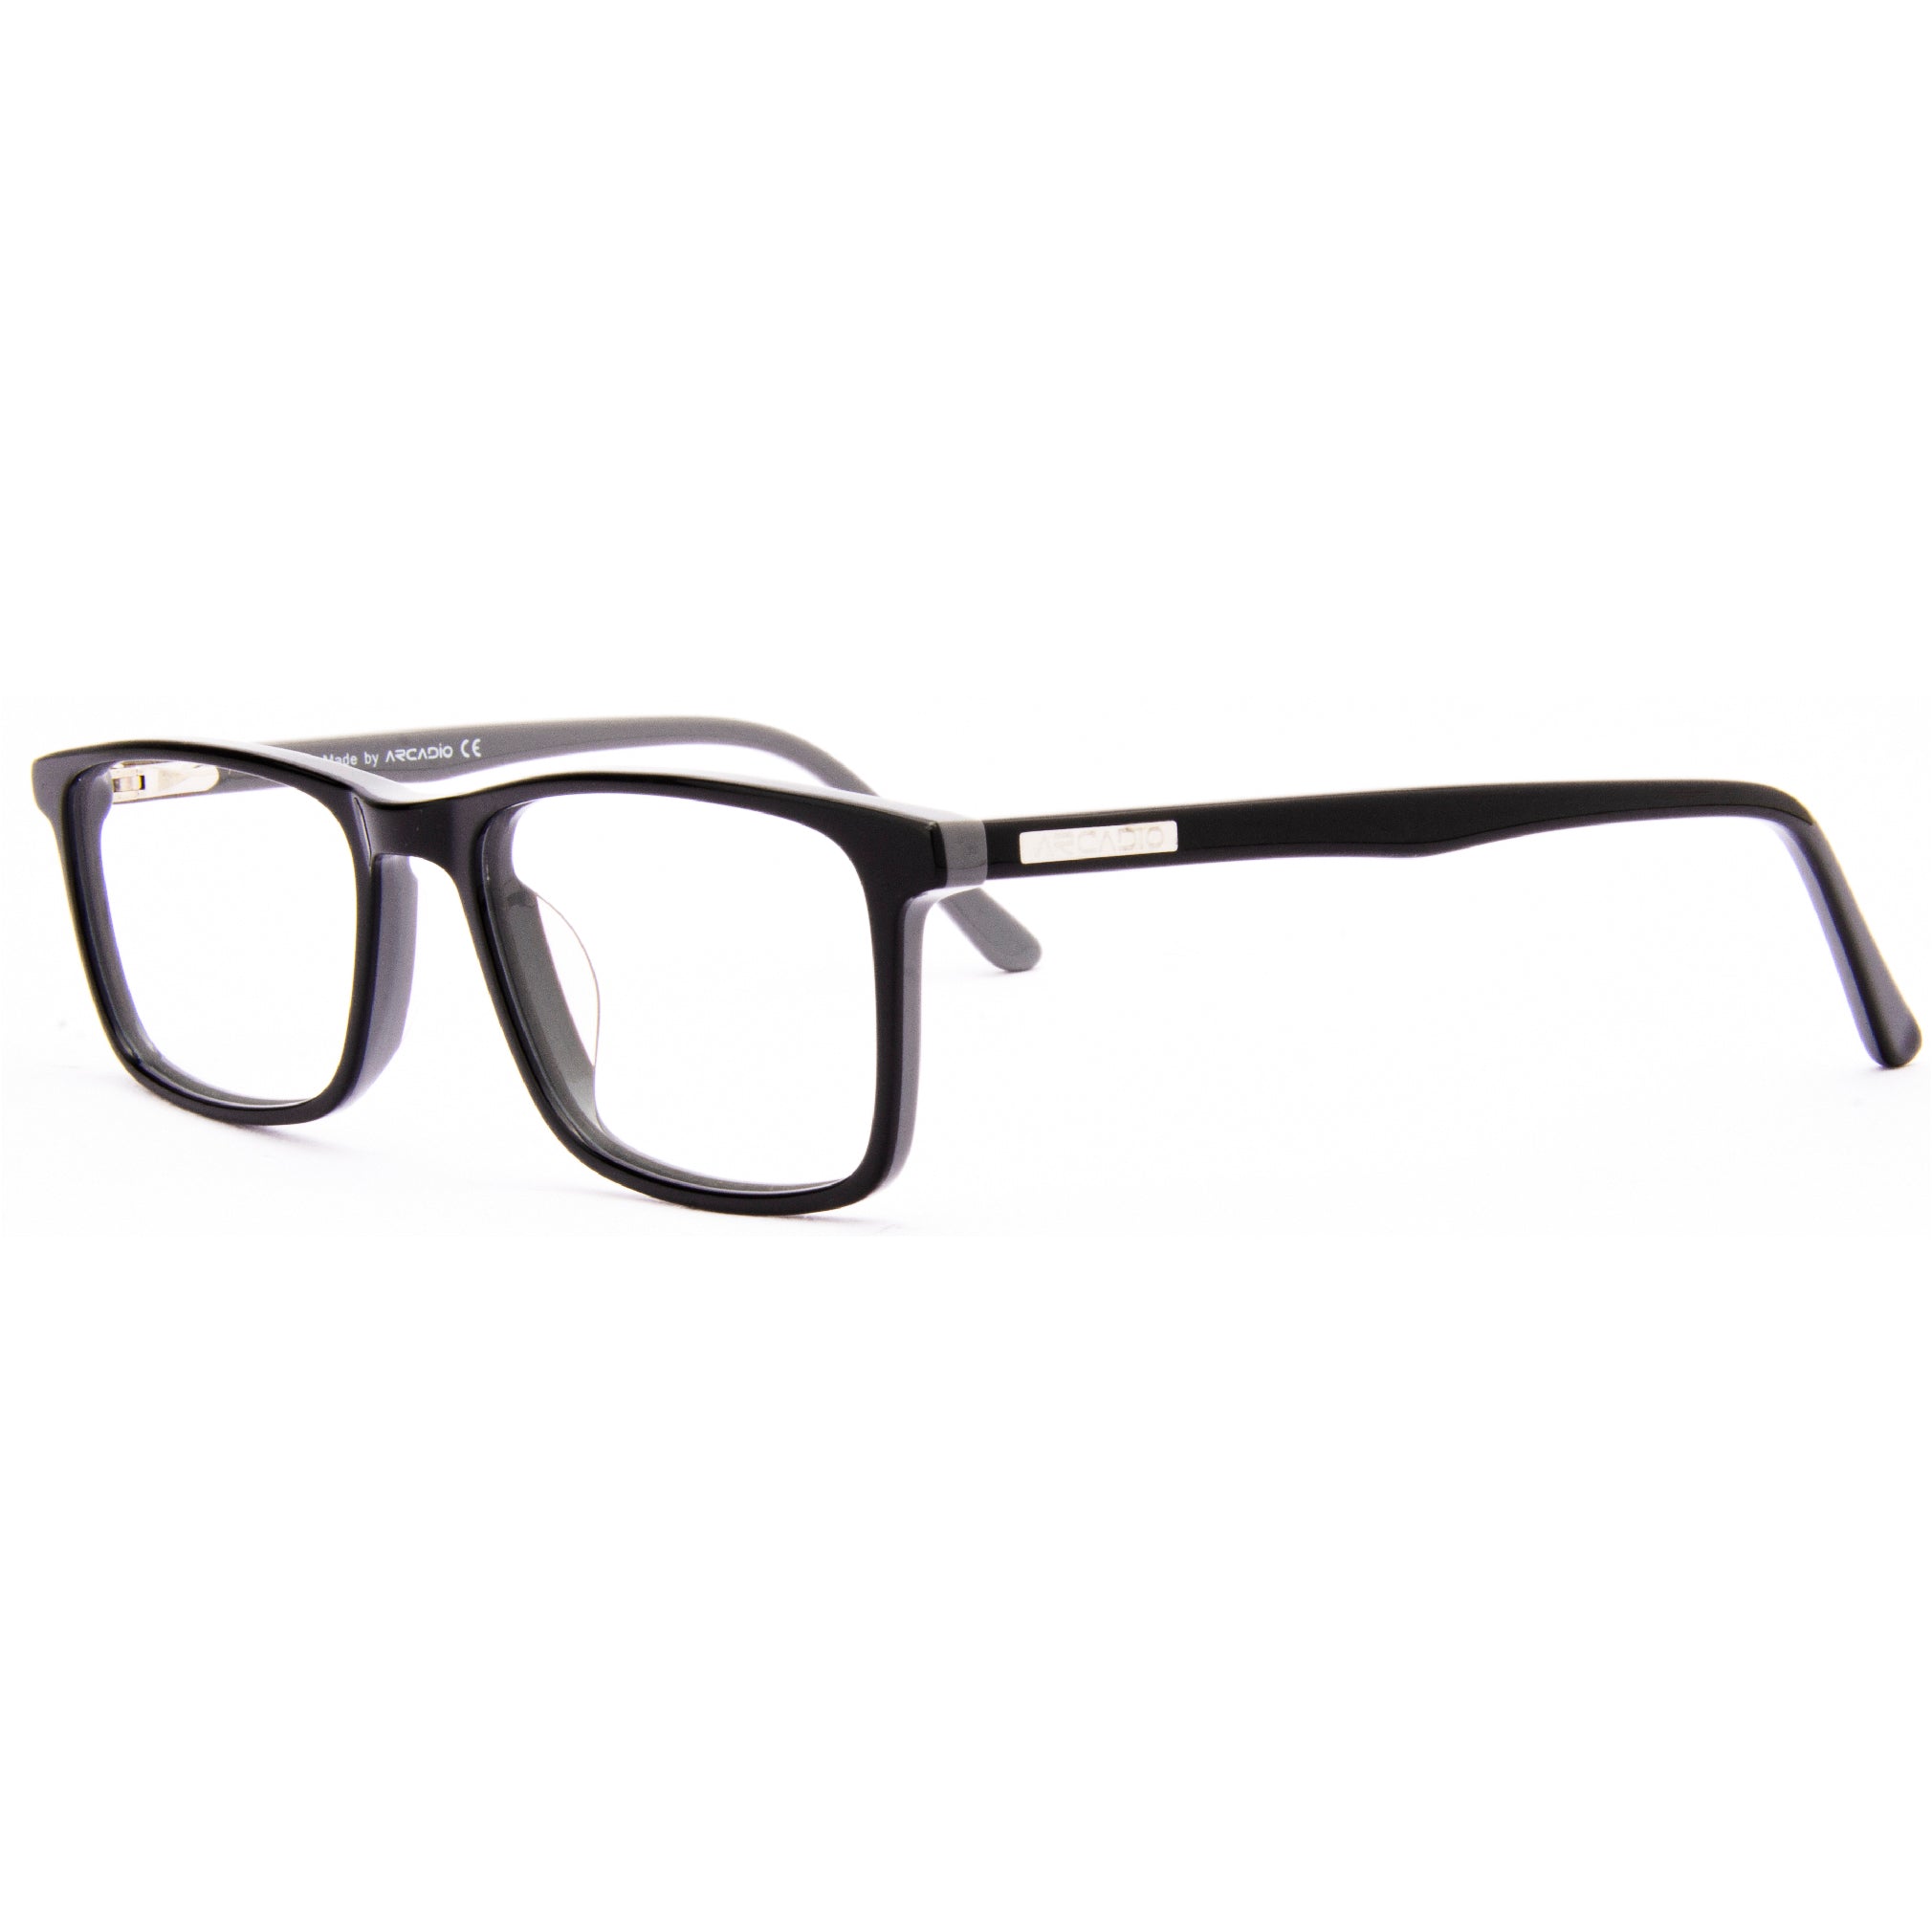 BRAVO Minimalist Eyeglasses for Teens SF4440 ARCADIO